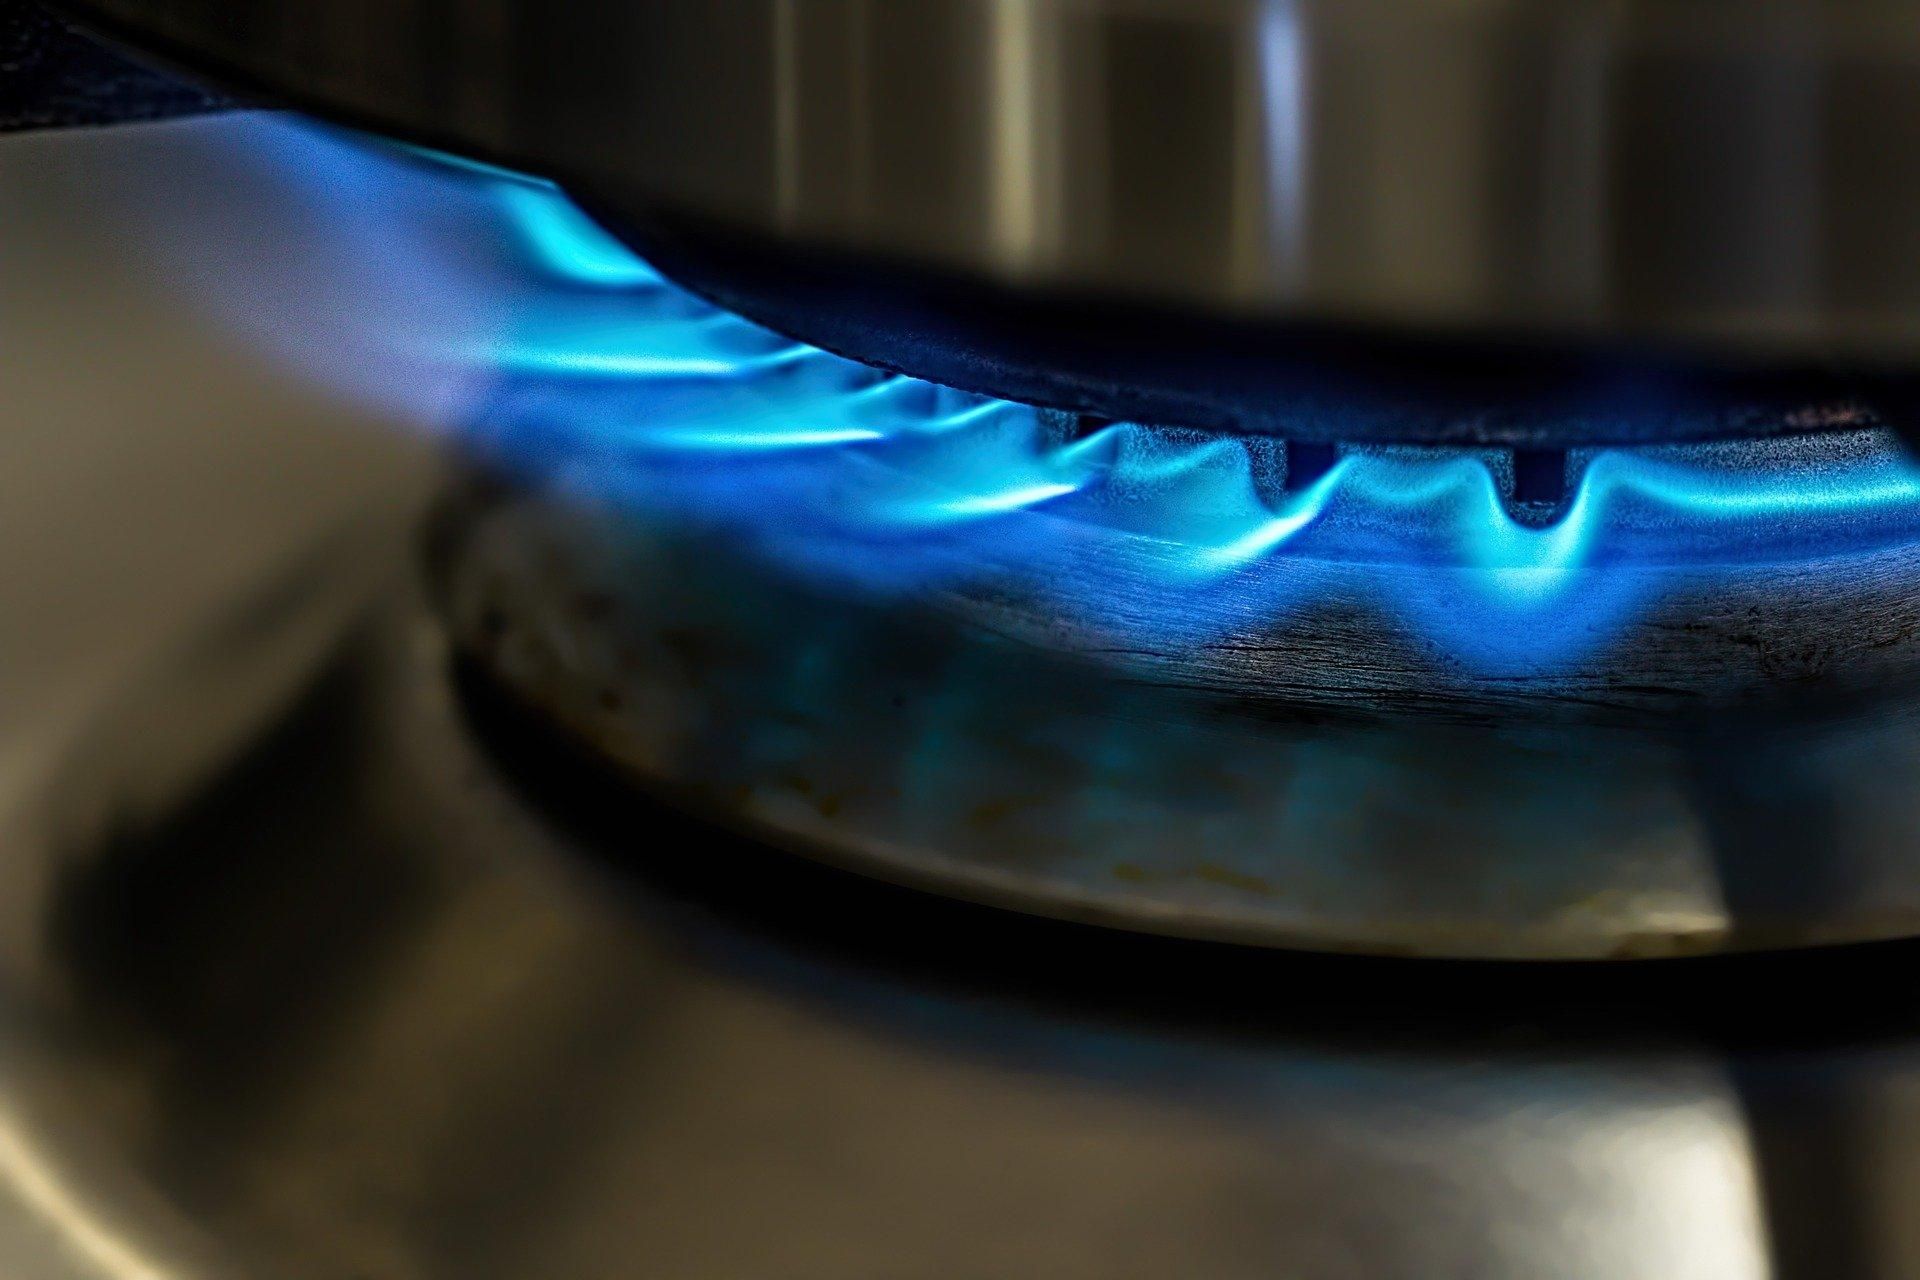 Украина продаст Молдове полмиллиона кубометров газа